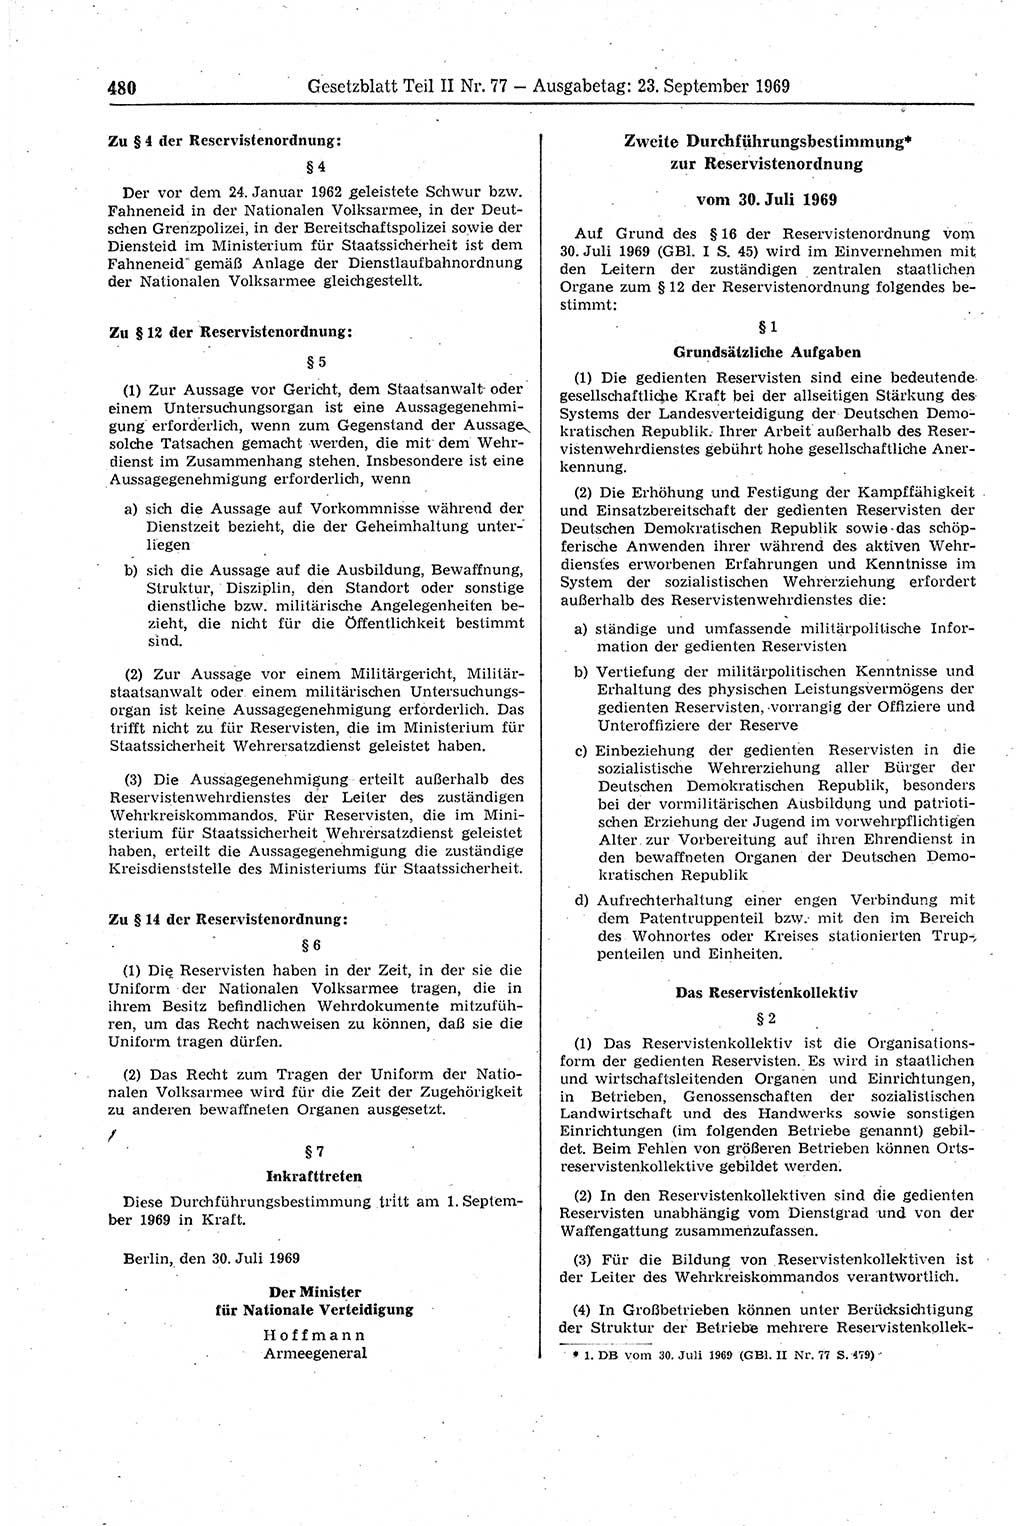 Gesetzblatt (GBl.) der Deutschen Demokratischen Republik (DDR) Teil ⅠⅠ 1969, Seite 480 (GBl. DDR ⅠⅠ 1969, S. 480)